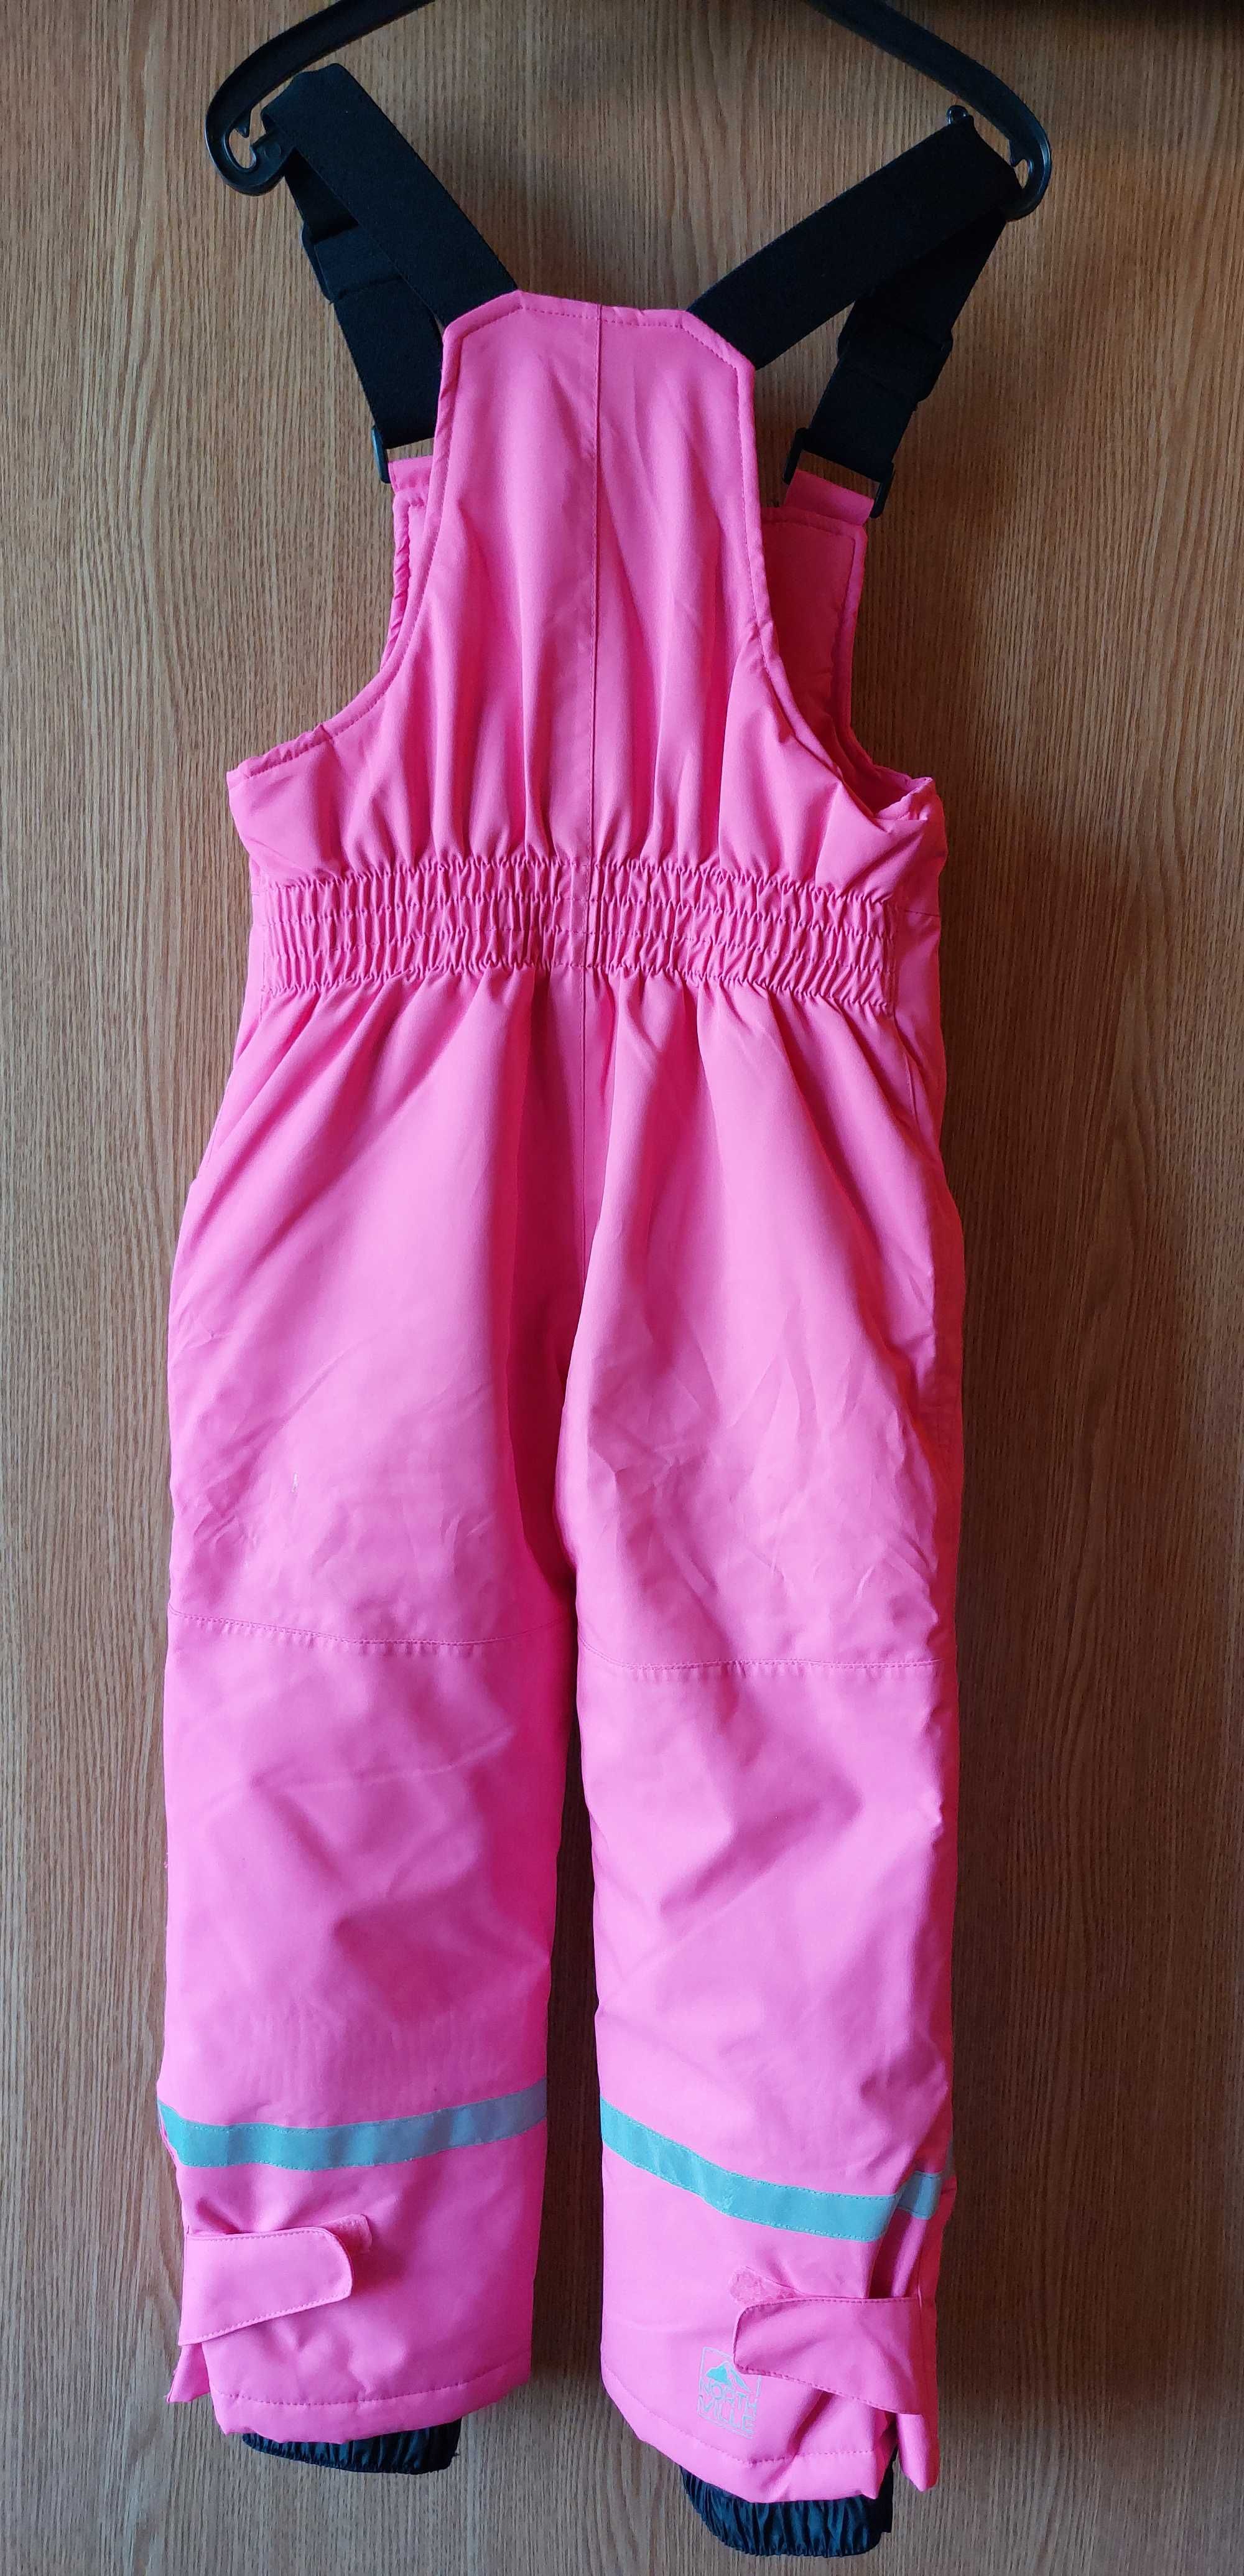 Pantaloni ski North Ville, roz, marimea 116